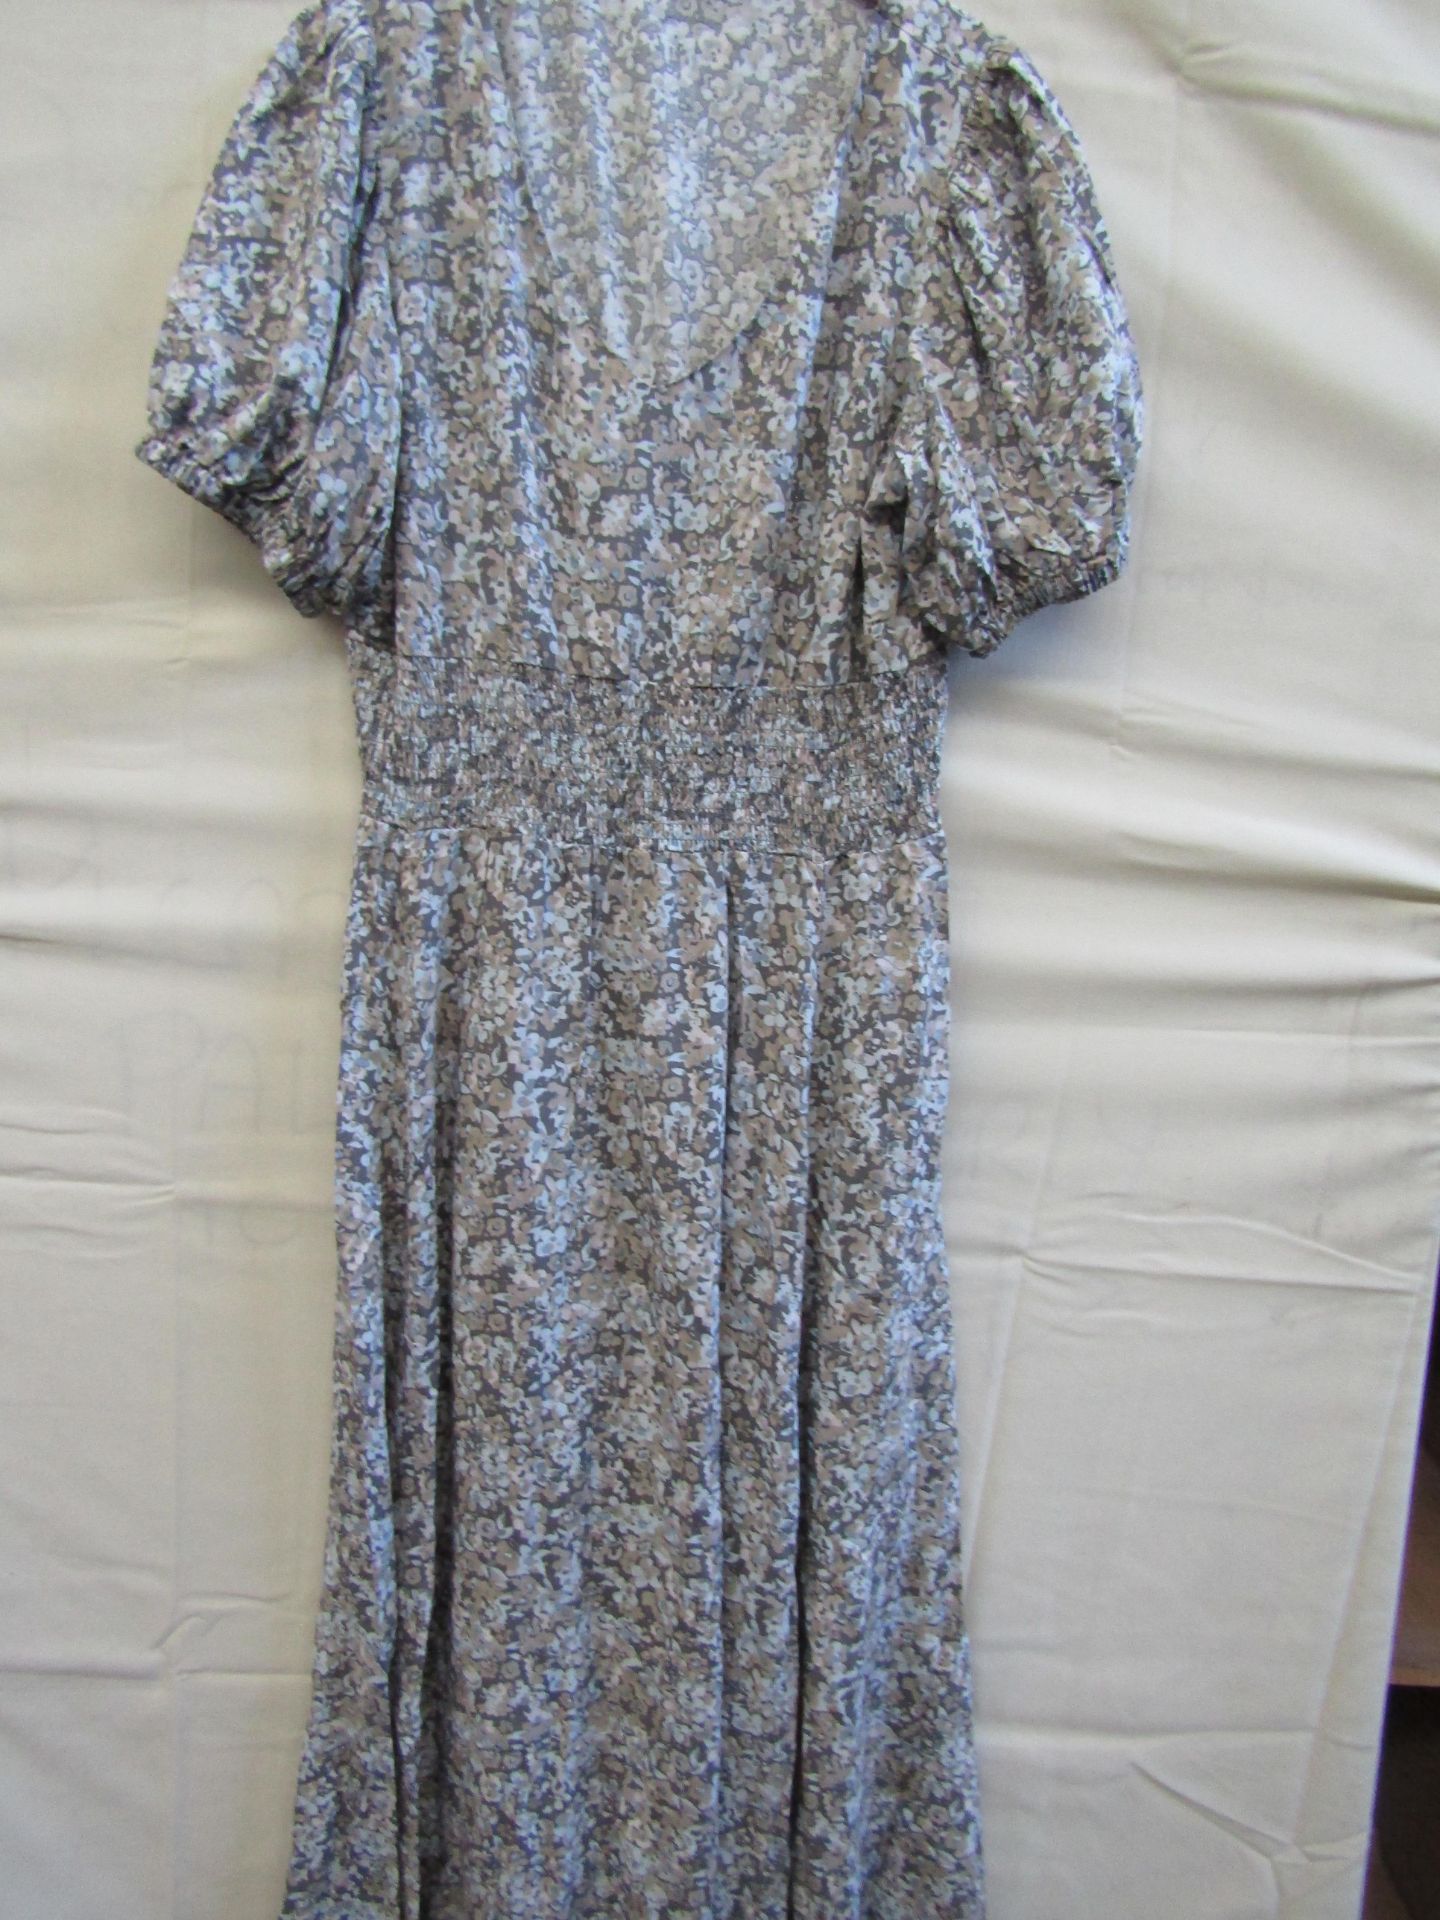 Vivance Long Floral Cotton Dress Size 18 Looks Unworn No Tags